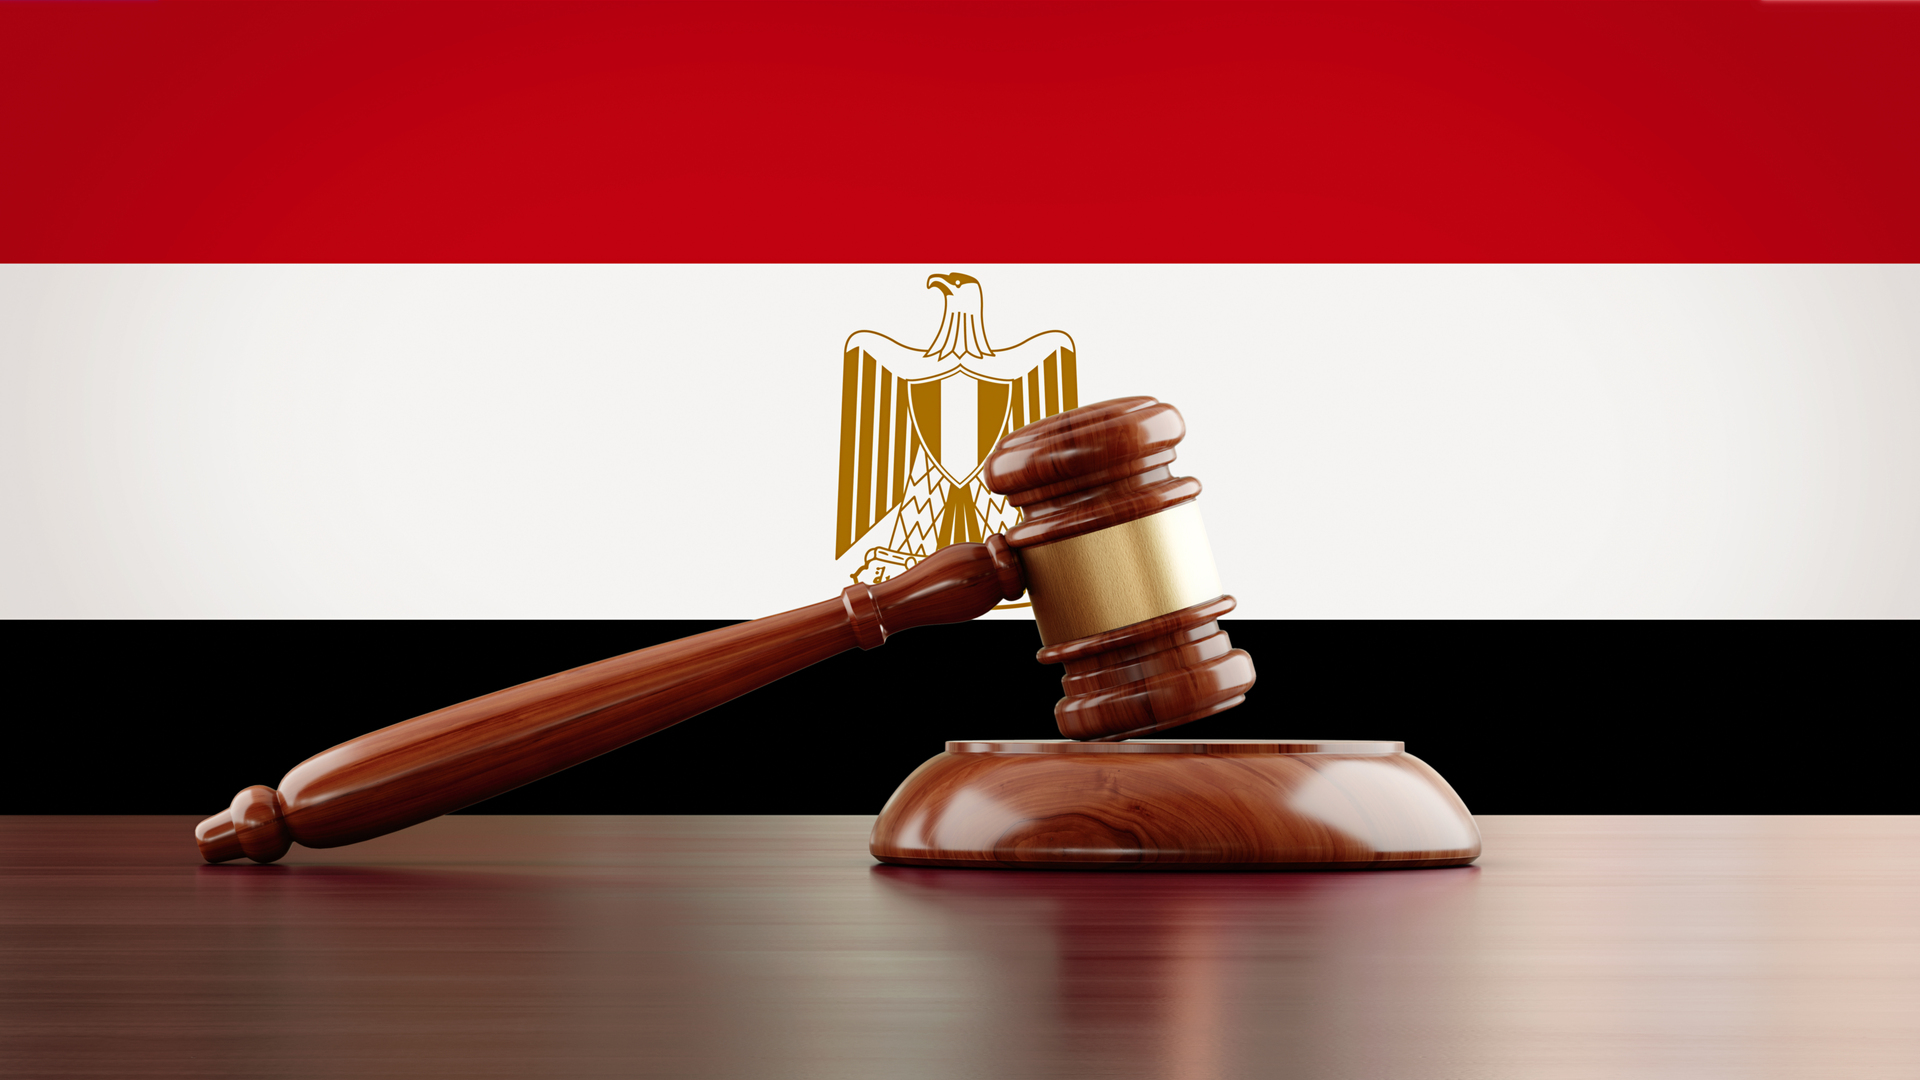 مصر.. الحكم بالسجن 10 سنوات على والد زوجة علاء مبارك وحسام جنينة في قضية 